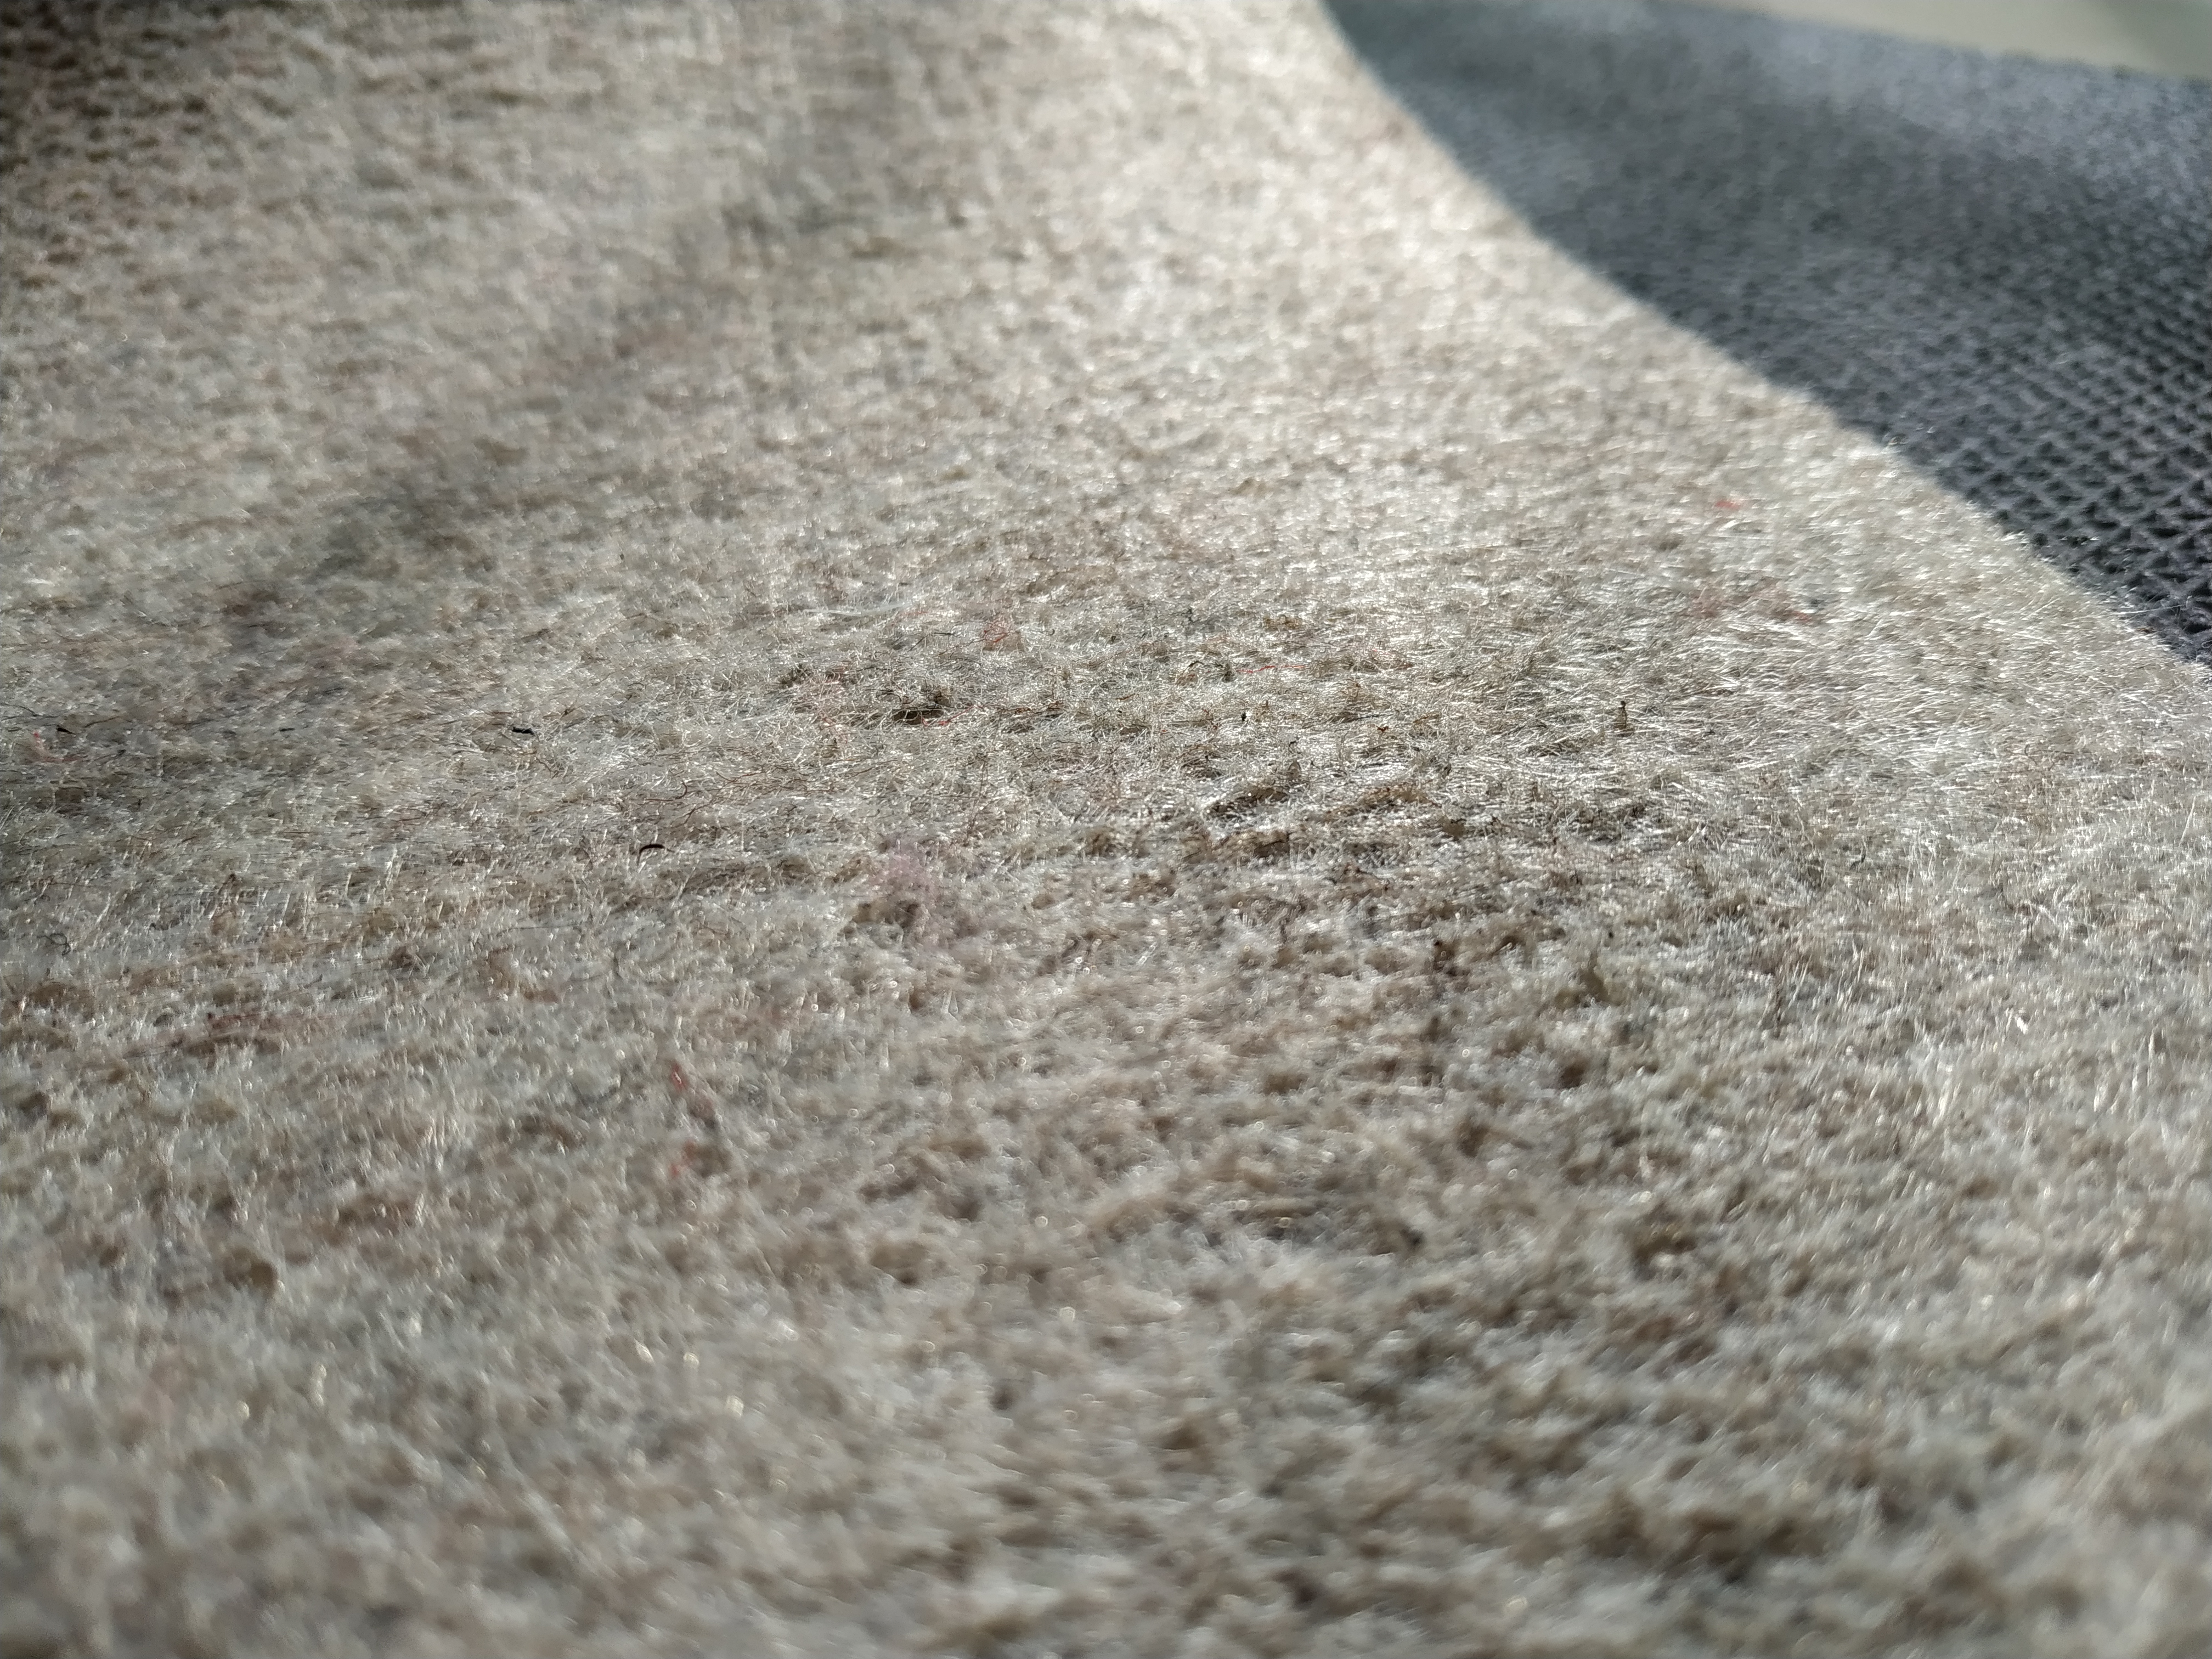 Almohadilla para alfombra de área de fieltro antideslizante, almohadilla de sujeción acolchada gruesa para pisos de madera dura debajo de la alfombra que protege los pisos, 1/4 'de espesor, 5 x 7 pies